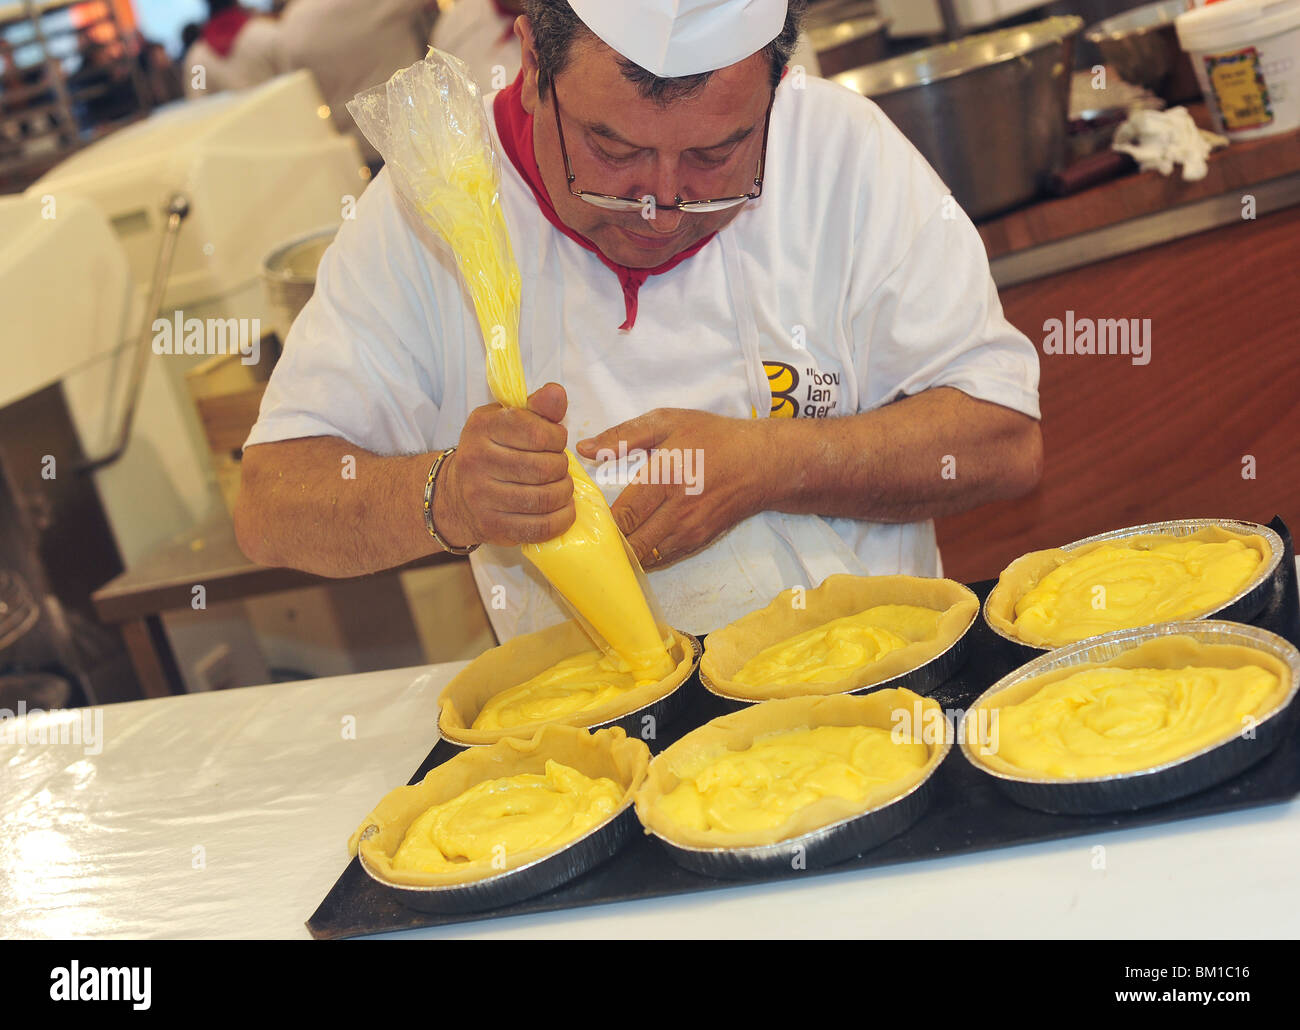 confectioner squeezing cream in cakes Stock Photo